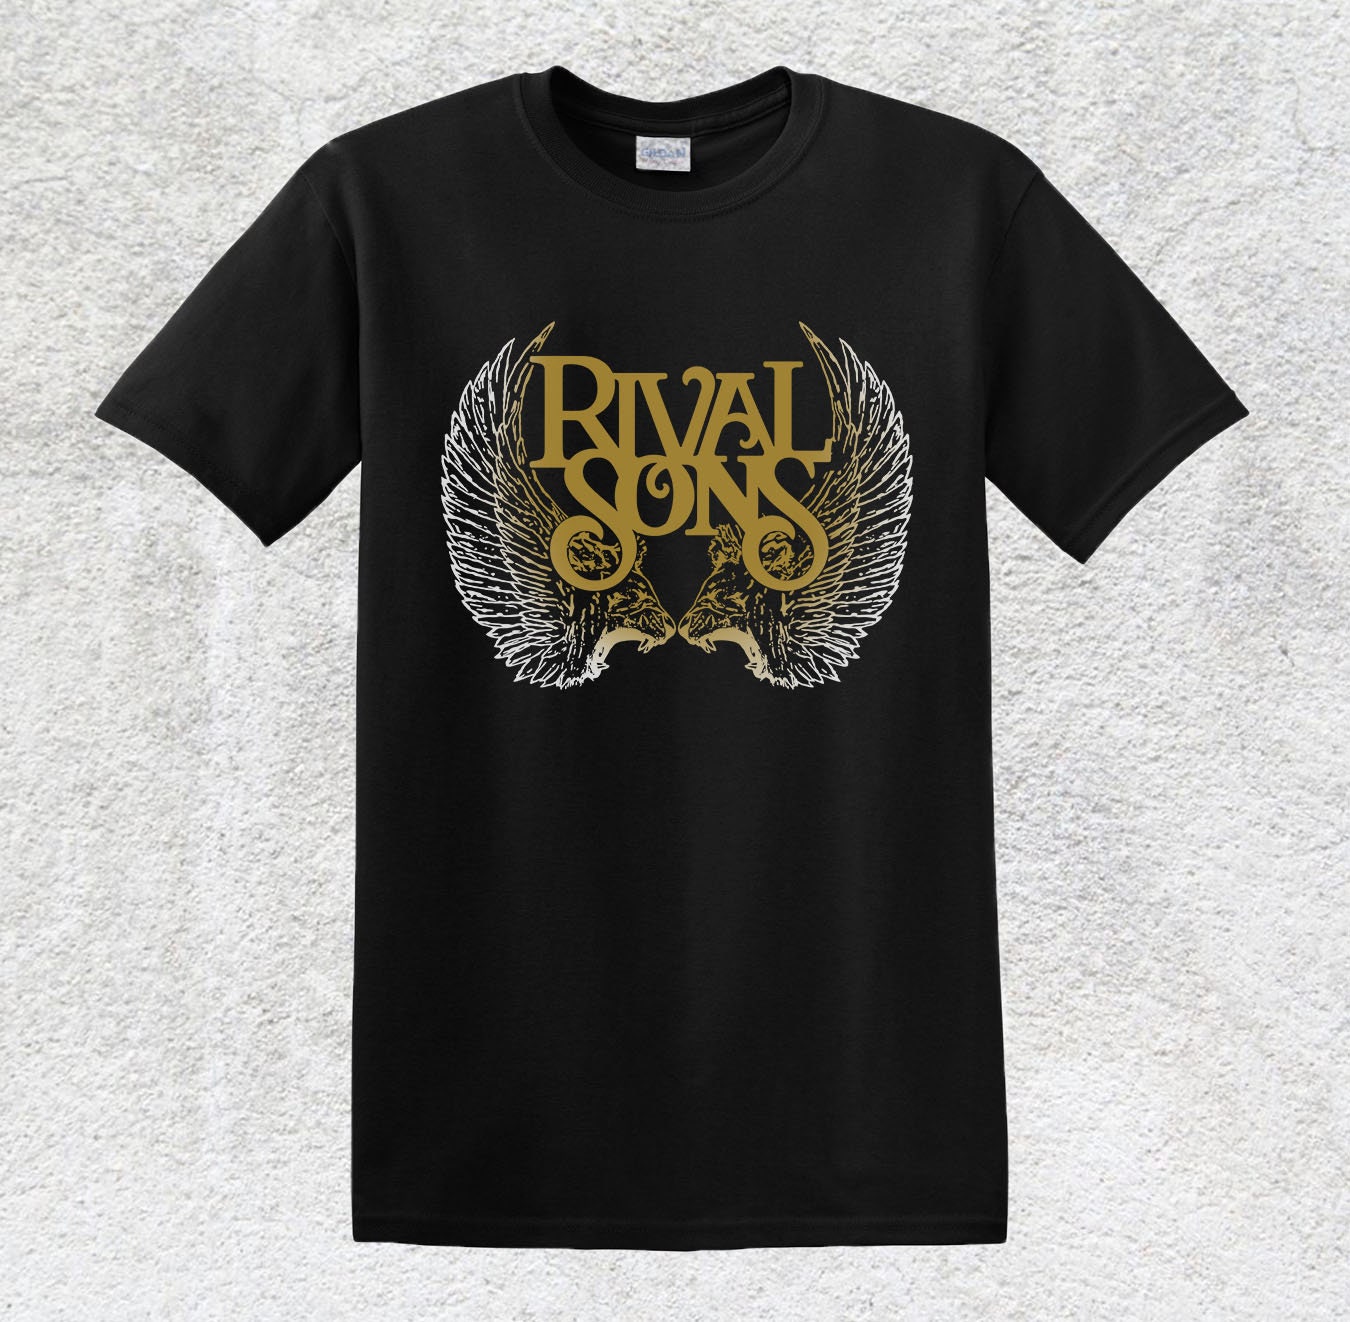 Om indstilling Fejde Bemyndigelse Rival Sons T-shirt American Rock Blues Rock Hard Rock Jay - Etsy Denmark